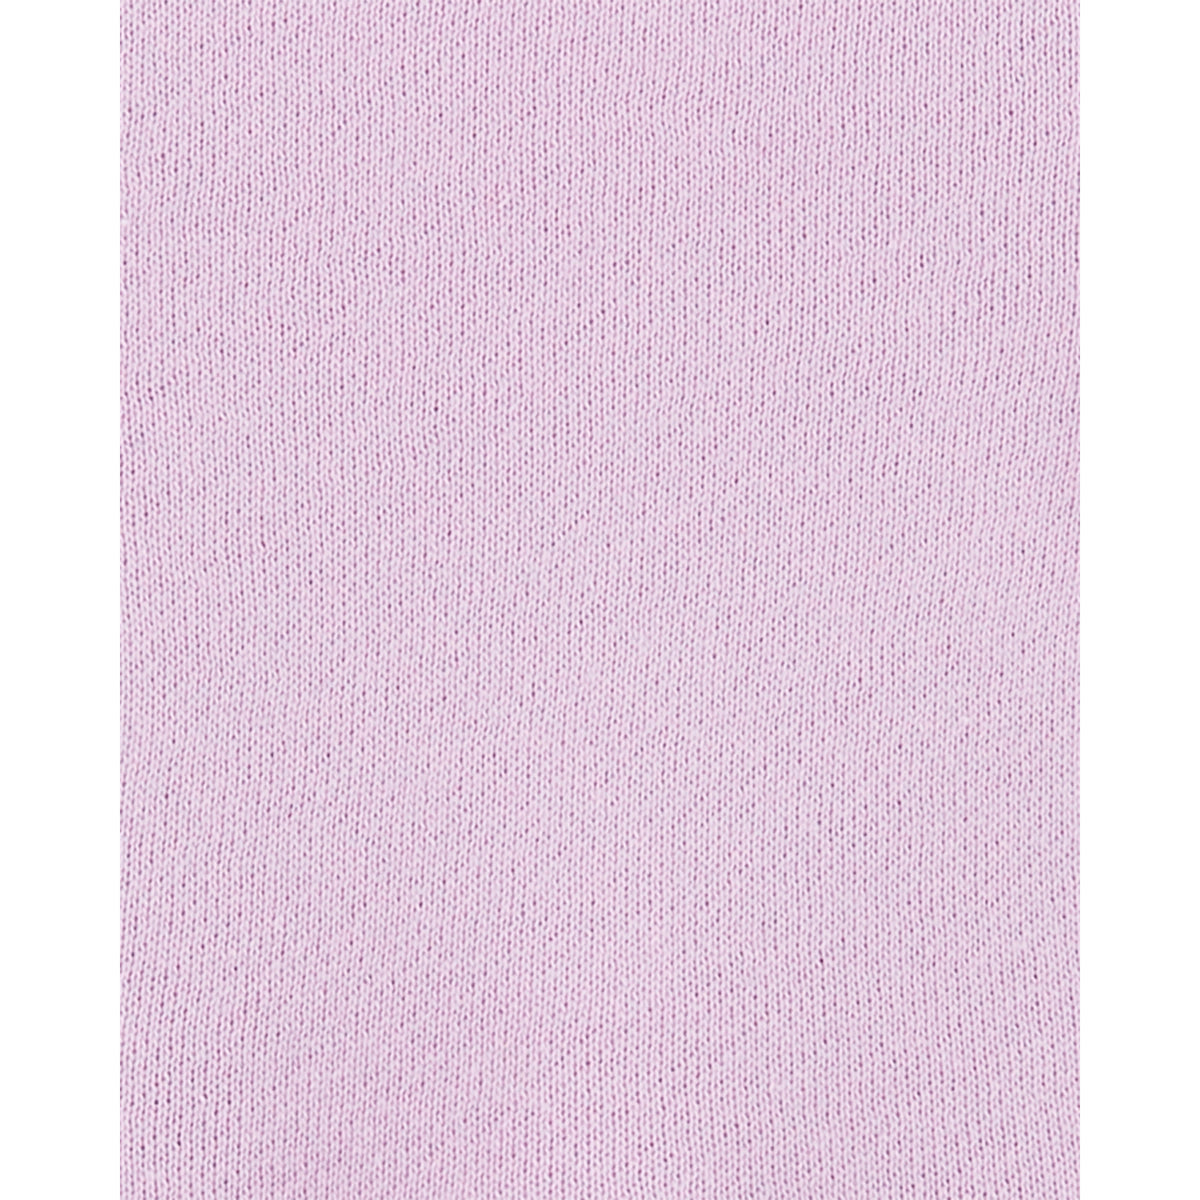 Carter's 粉嫩紫羅蘭洋裝(6M-24M)